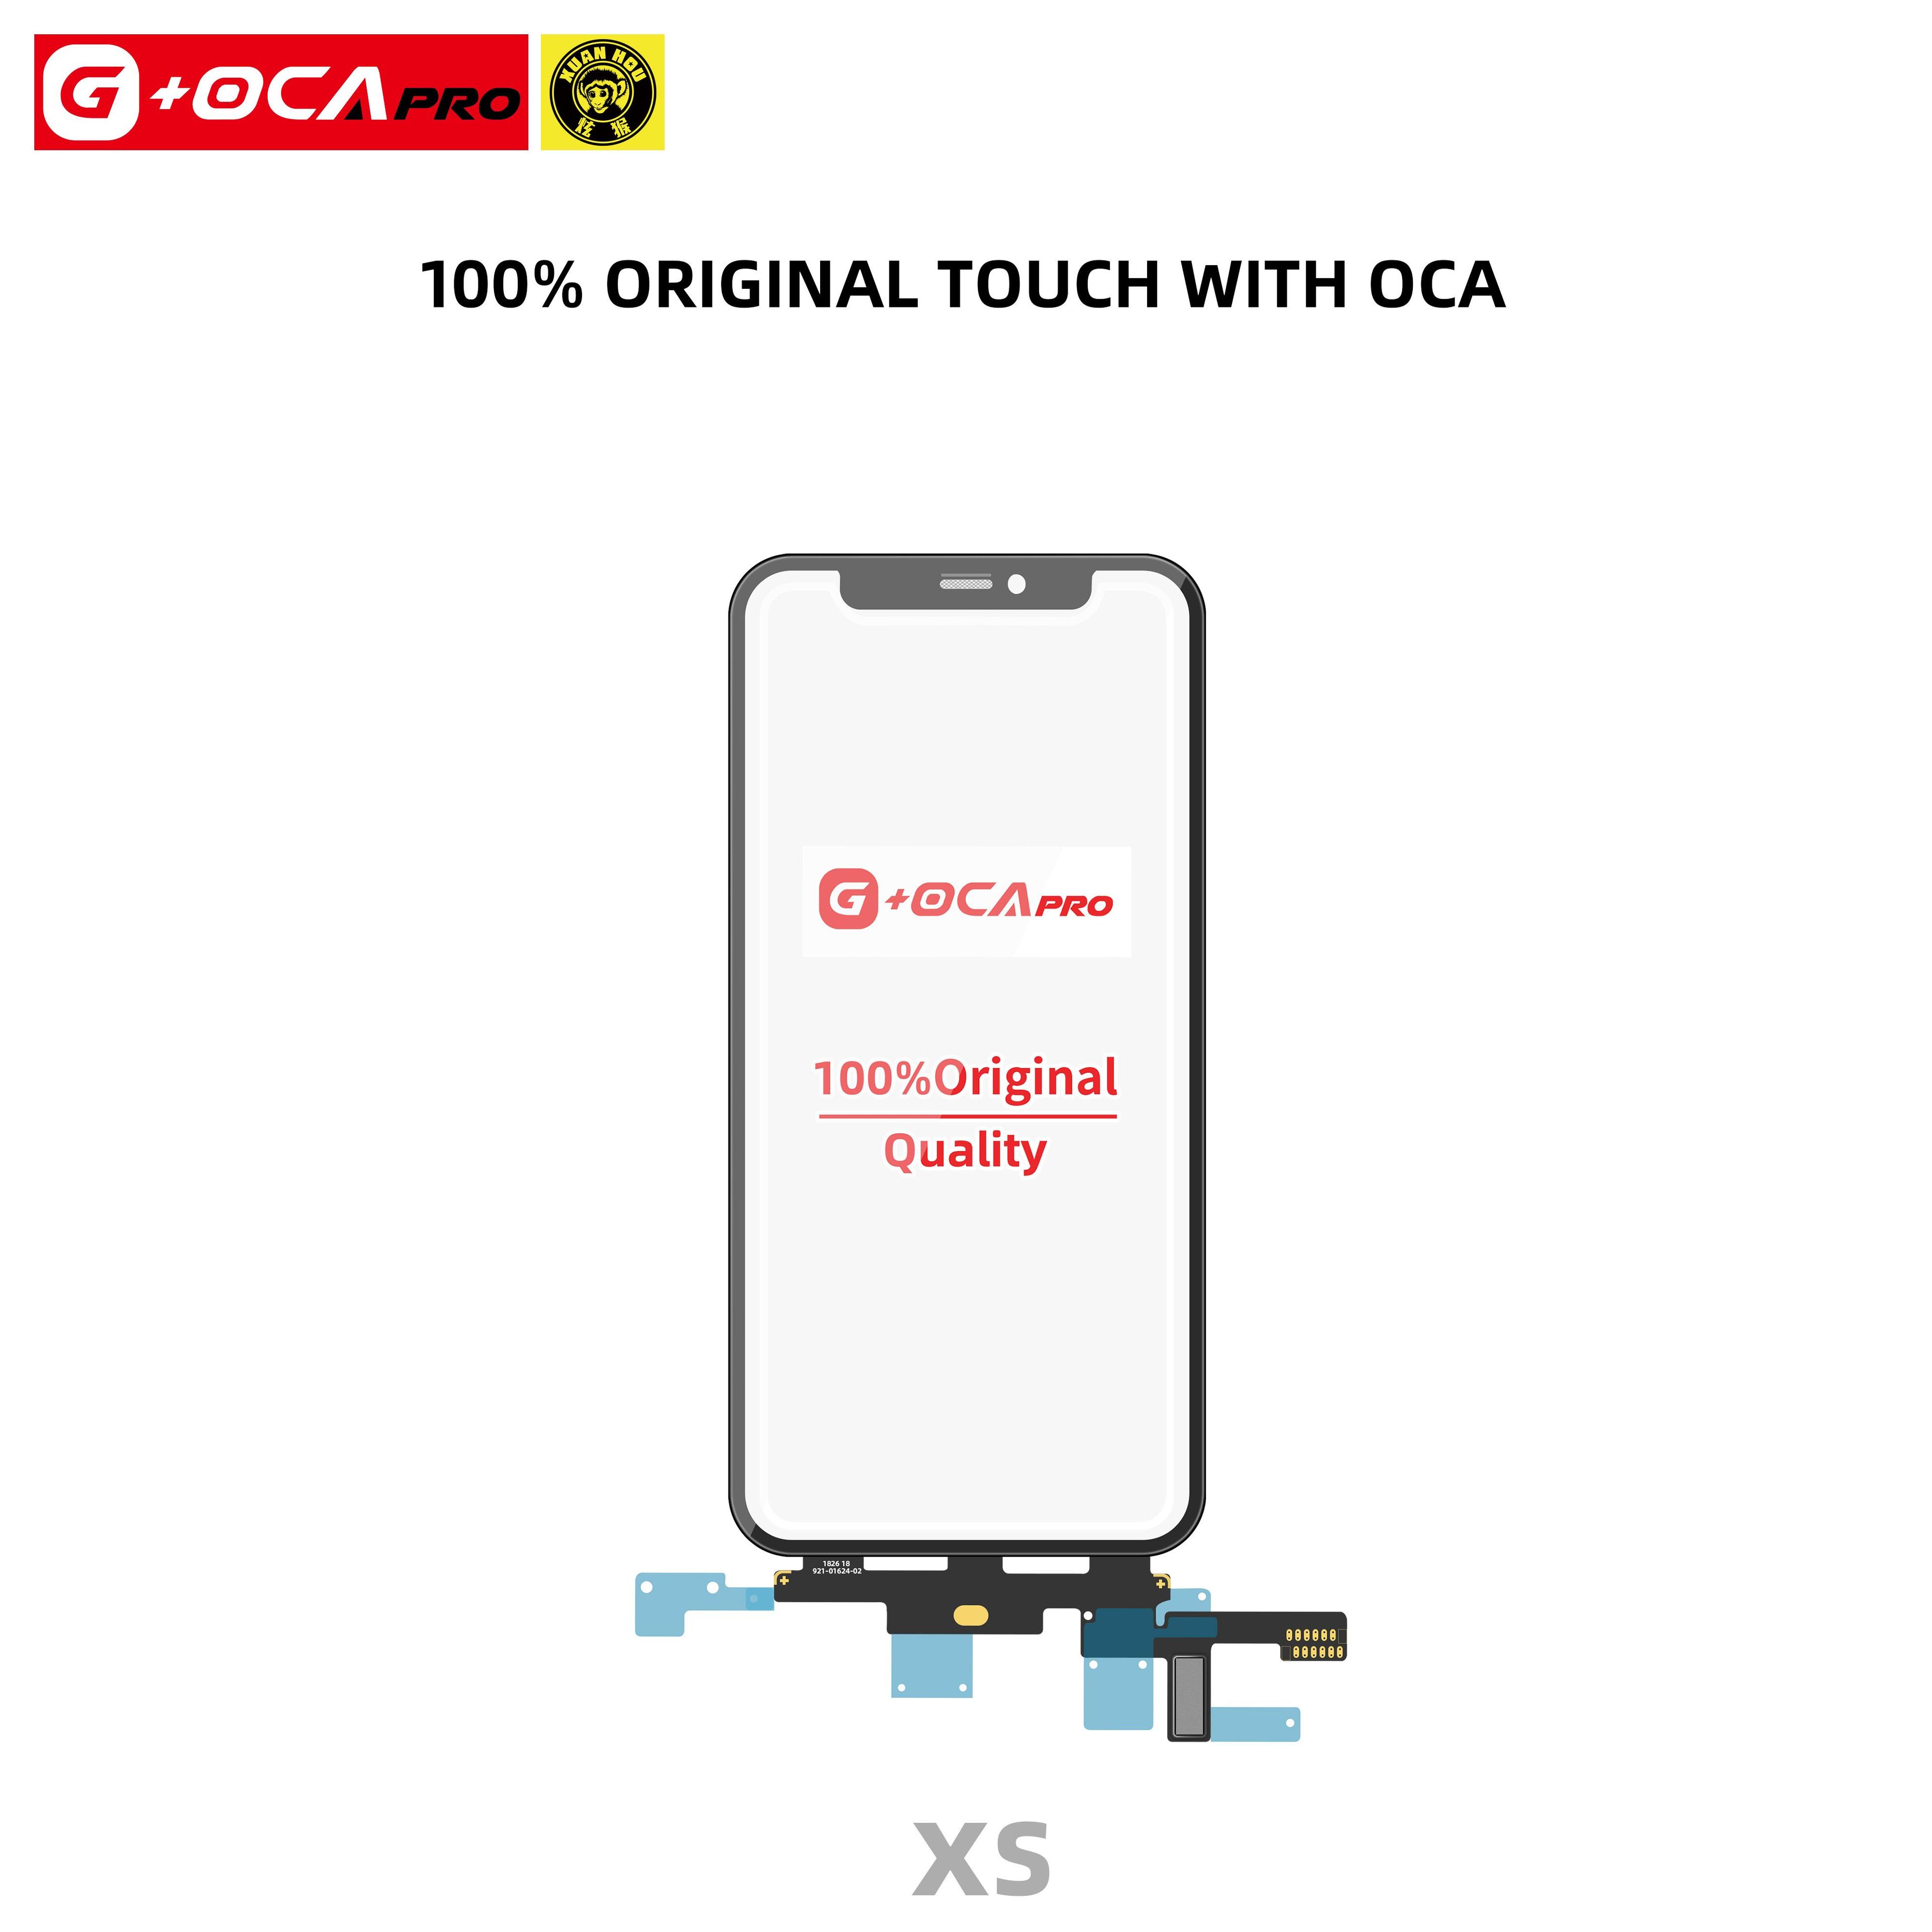 Ekran dotykowy G + OCA Pro z oryginalnym kontrolerem dotyku (z powłoką oleofobową) iPhone Xs